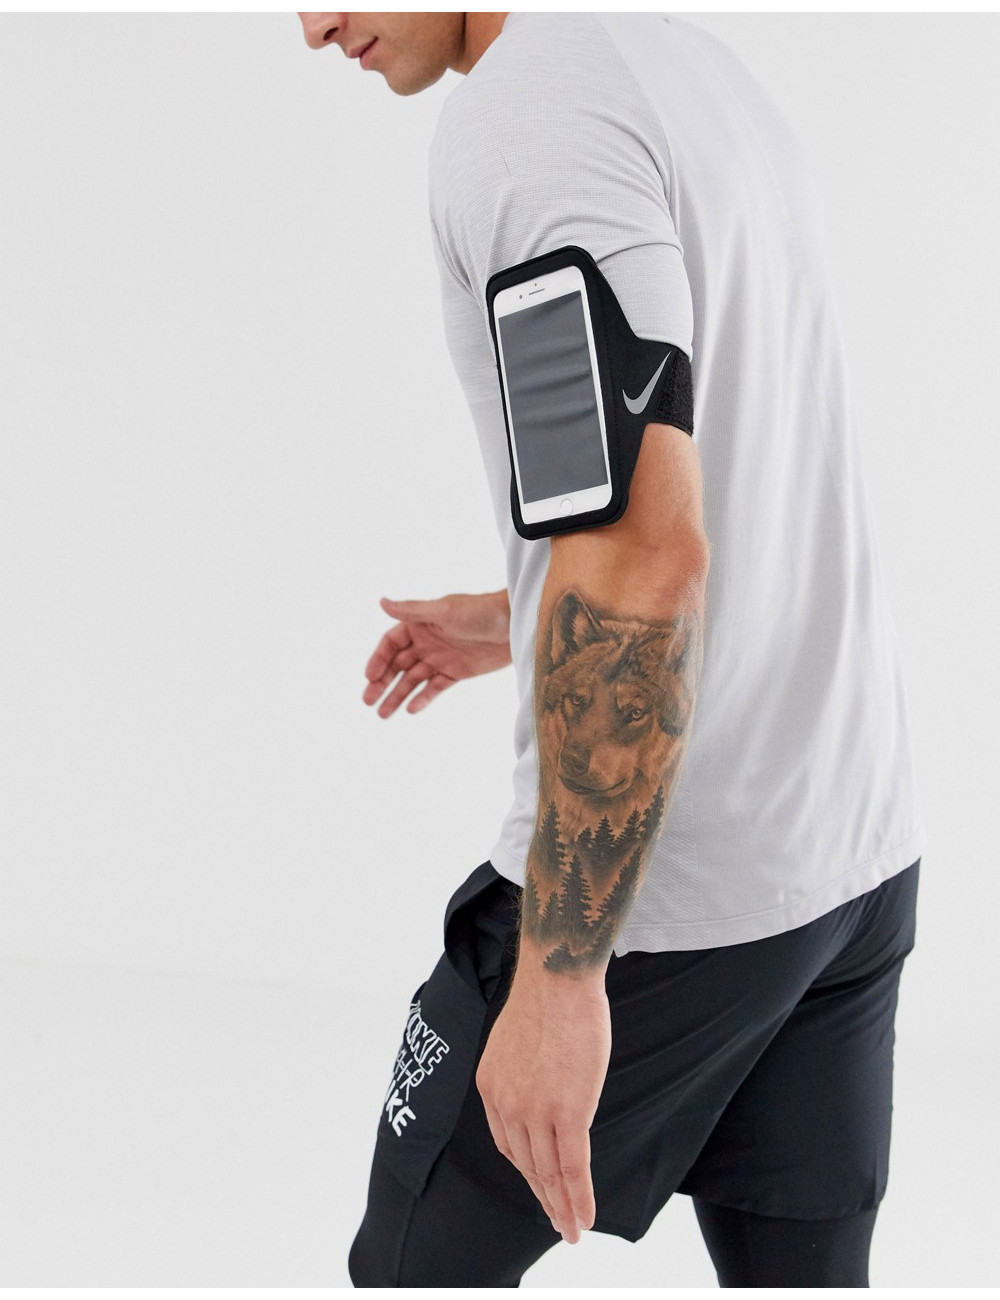 Nike Running Plus phone...